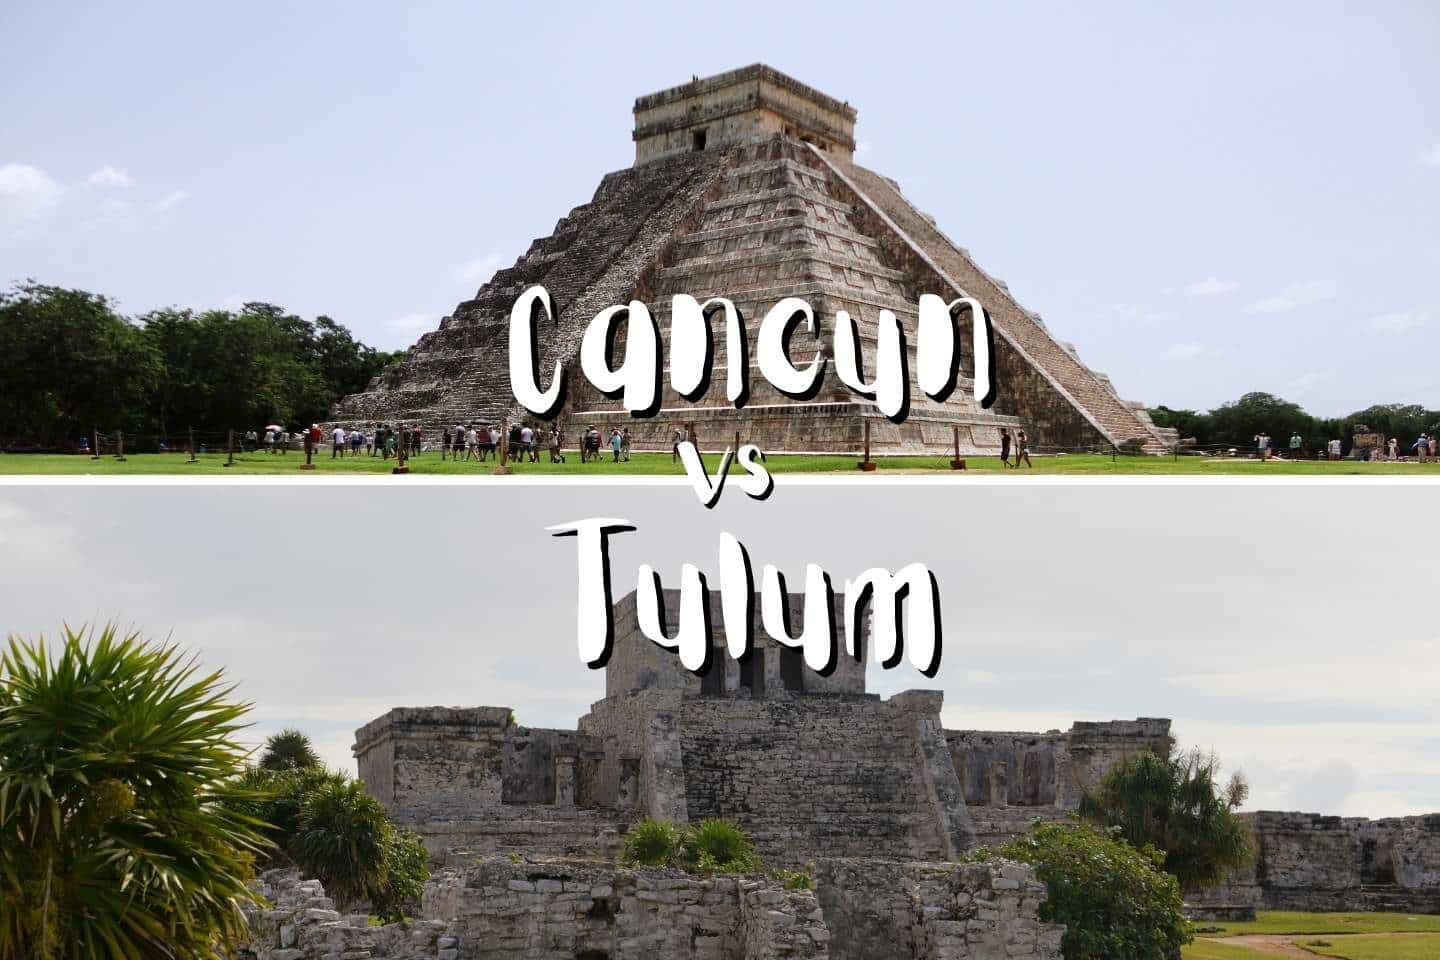 Cancun vs Tulum